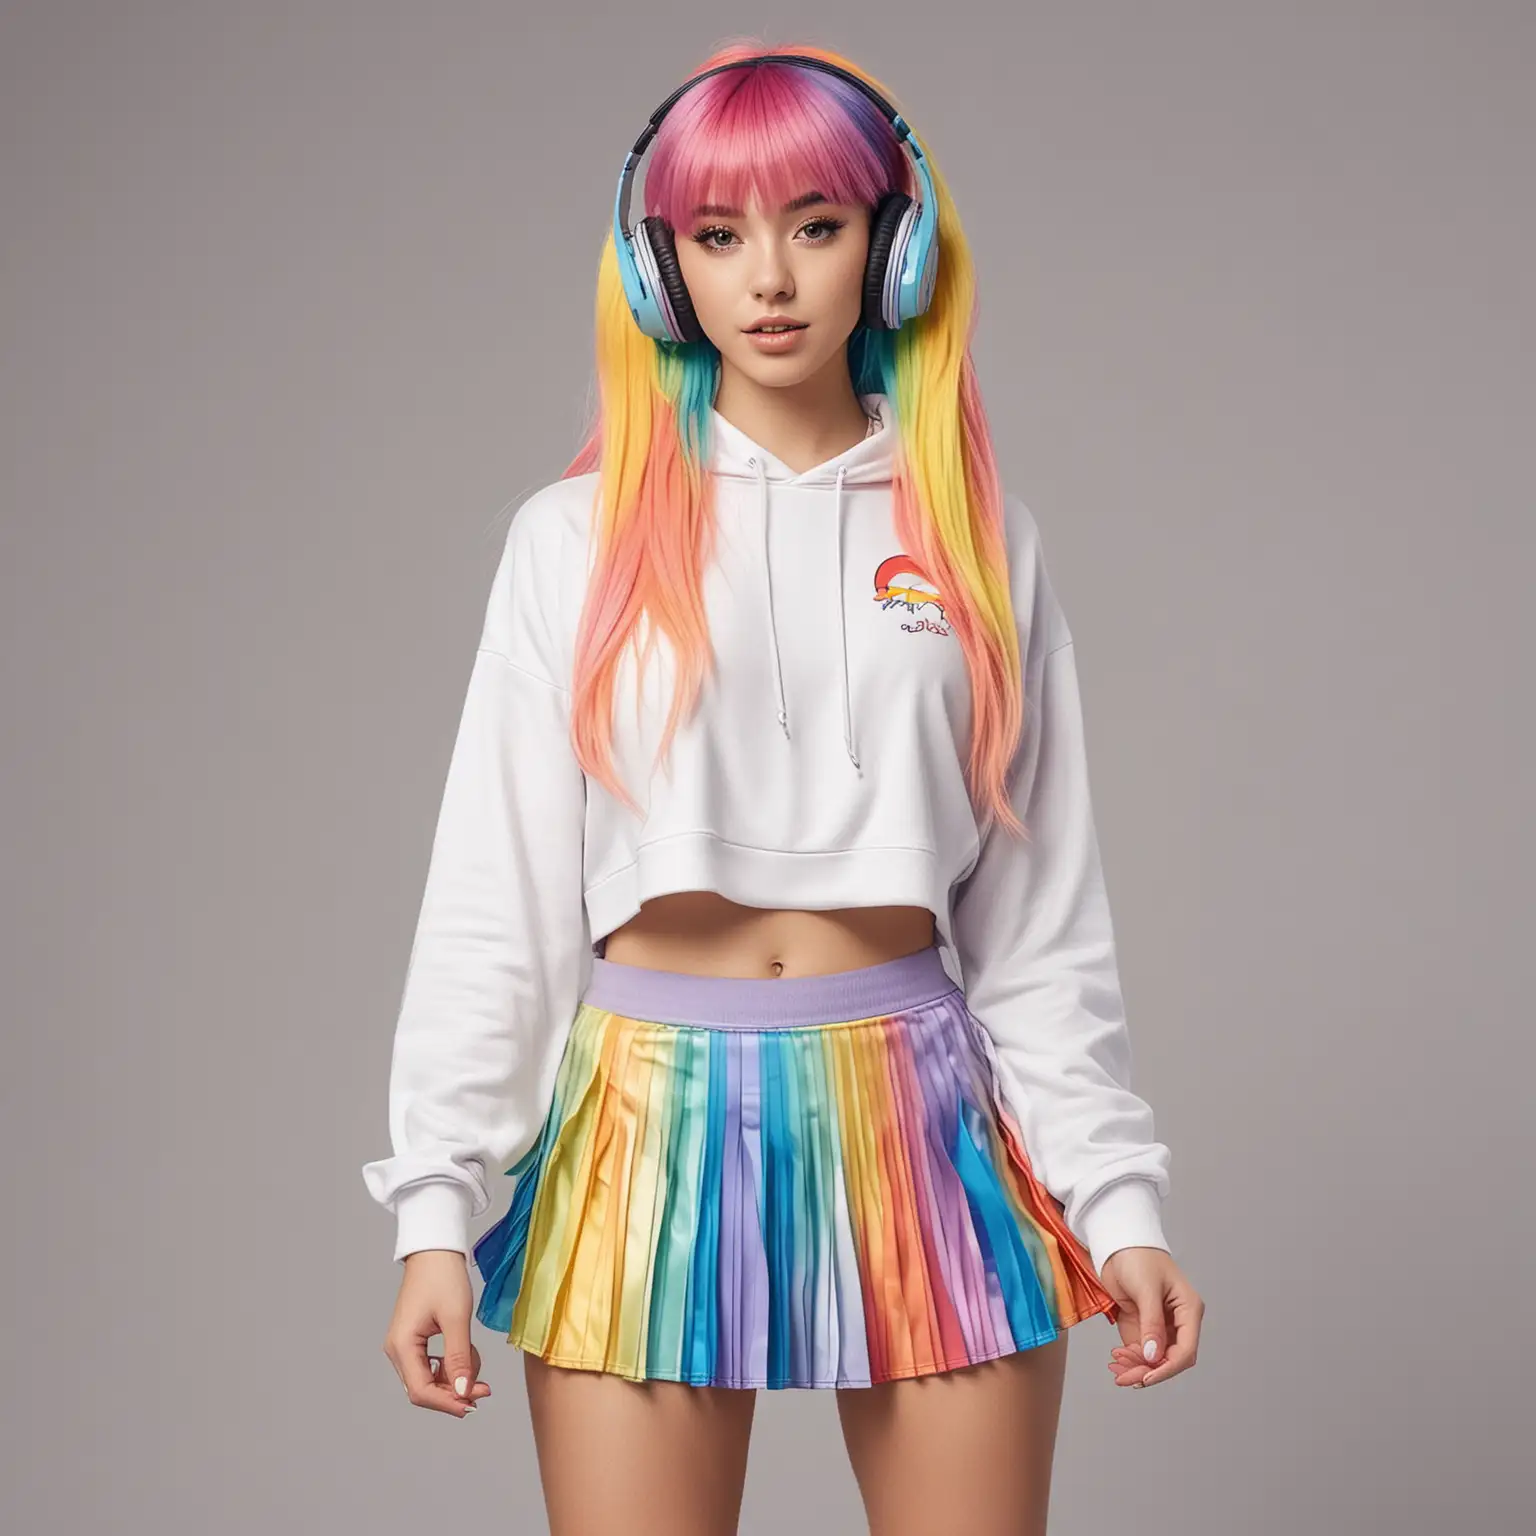 Realistisch einer jungen Frau mit Regenbogenhaarfarbe im Kawaii-Stil:
Pleated miniskirt with a cropped hoodie and headphones